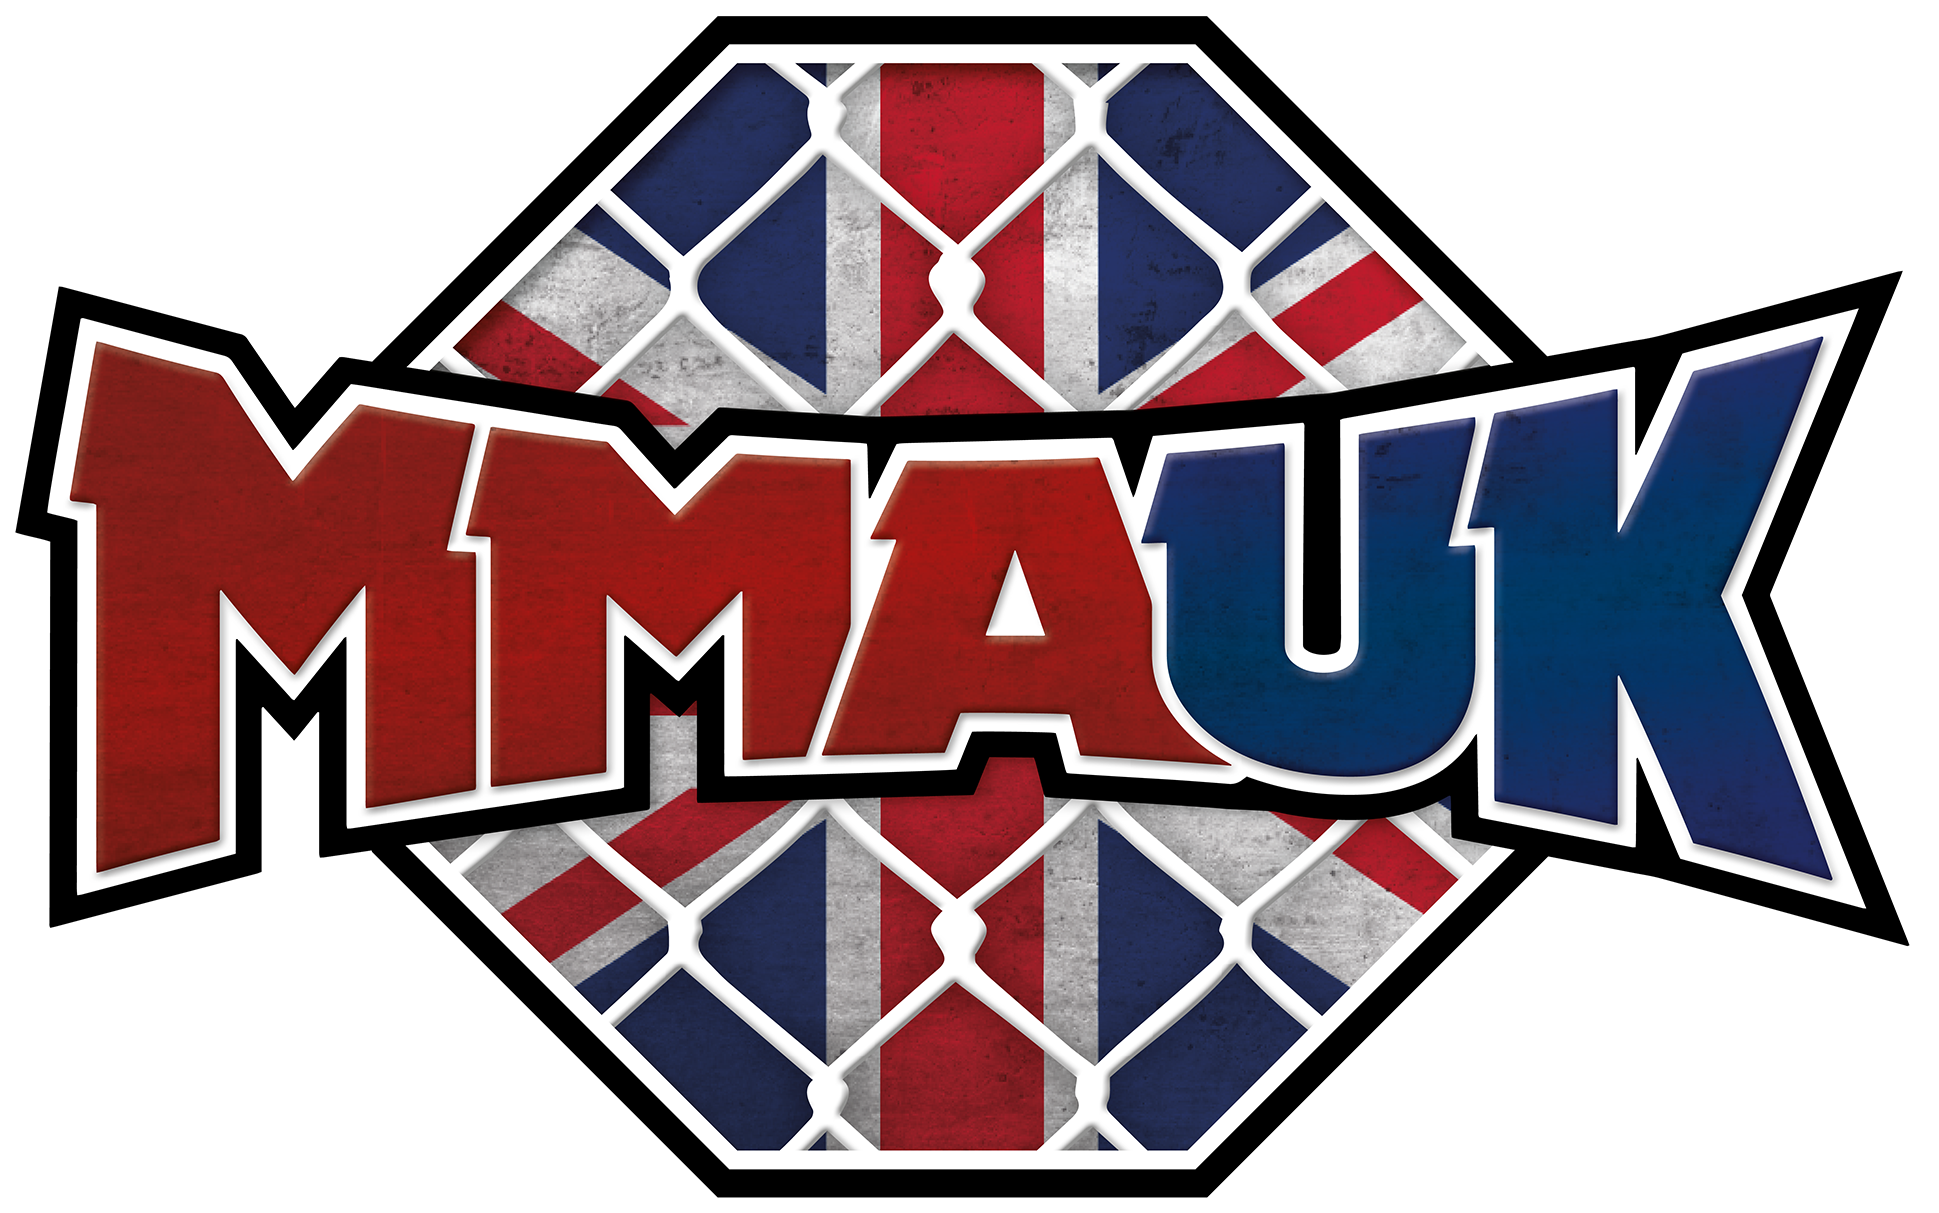 Mma Uk - Mma Uk (2000x1270)